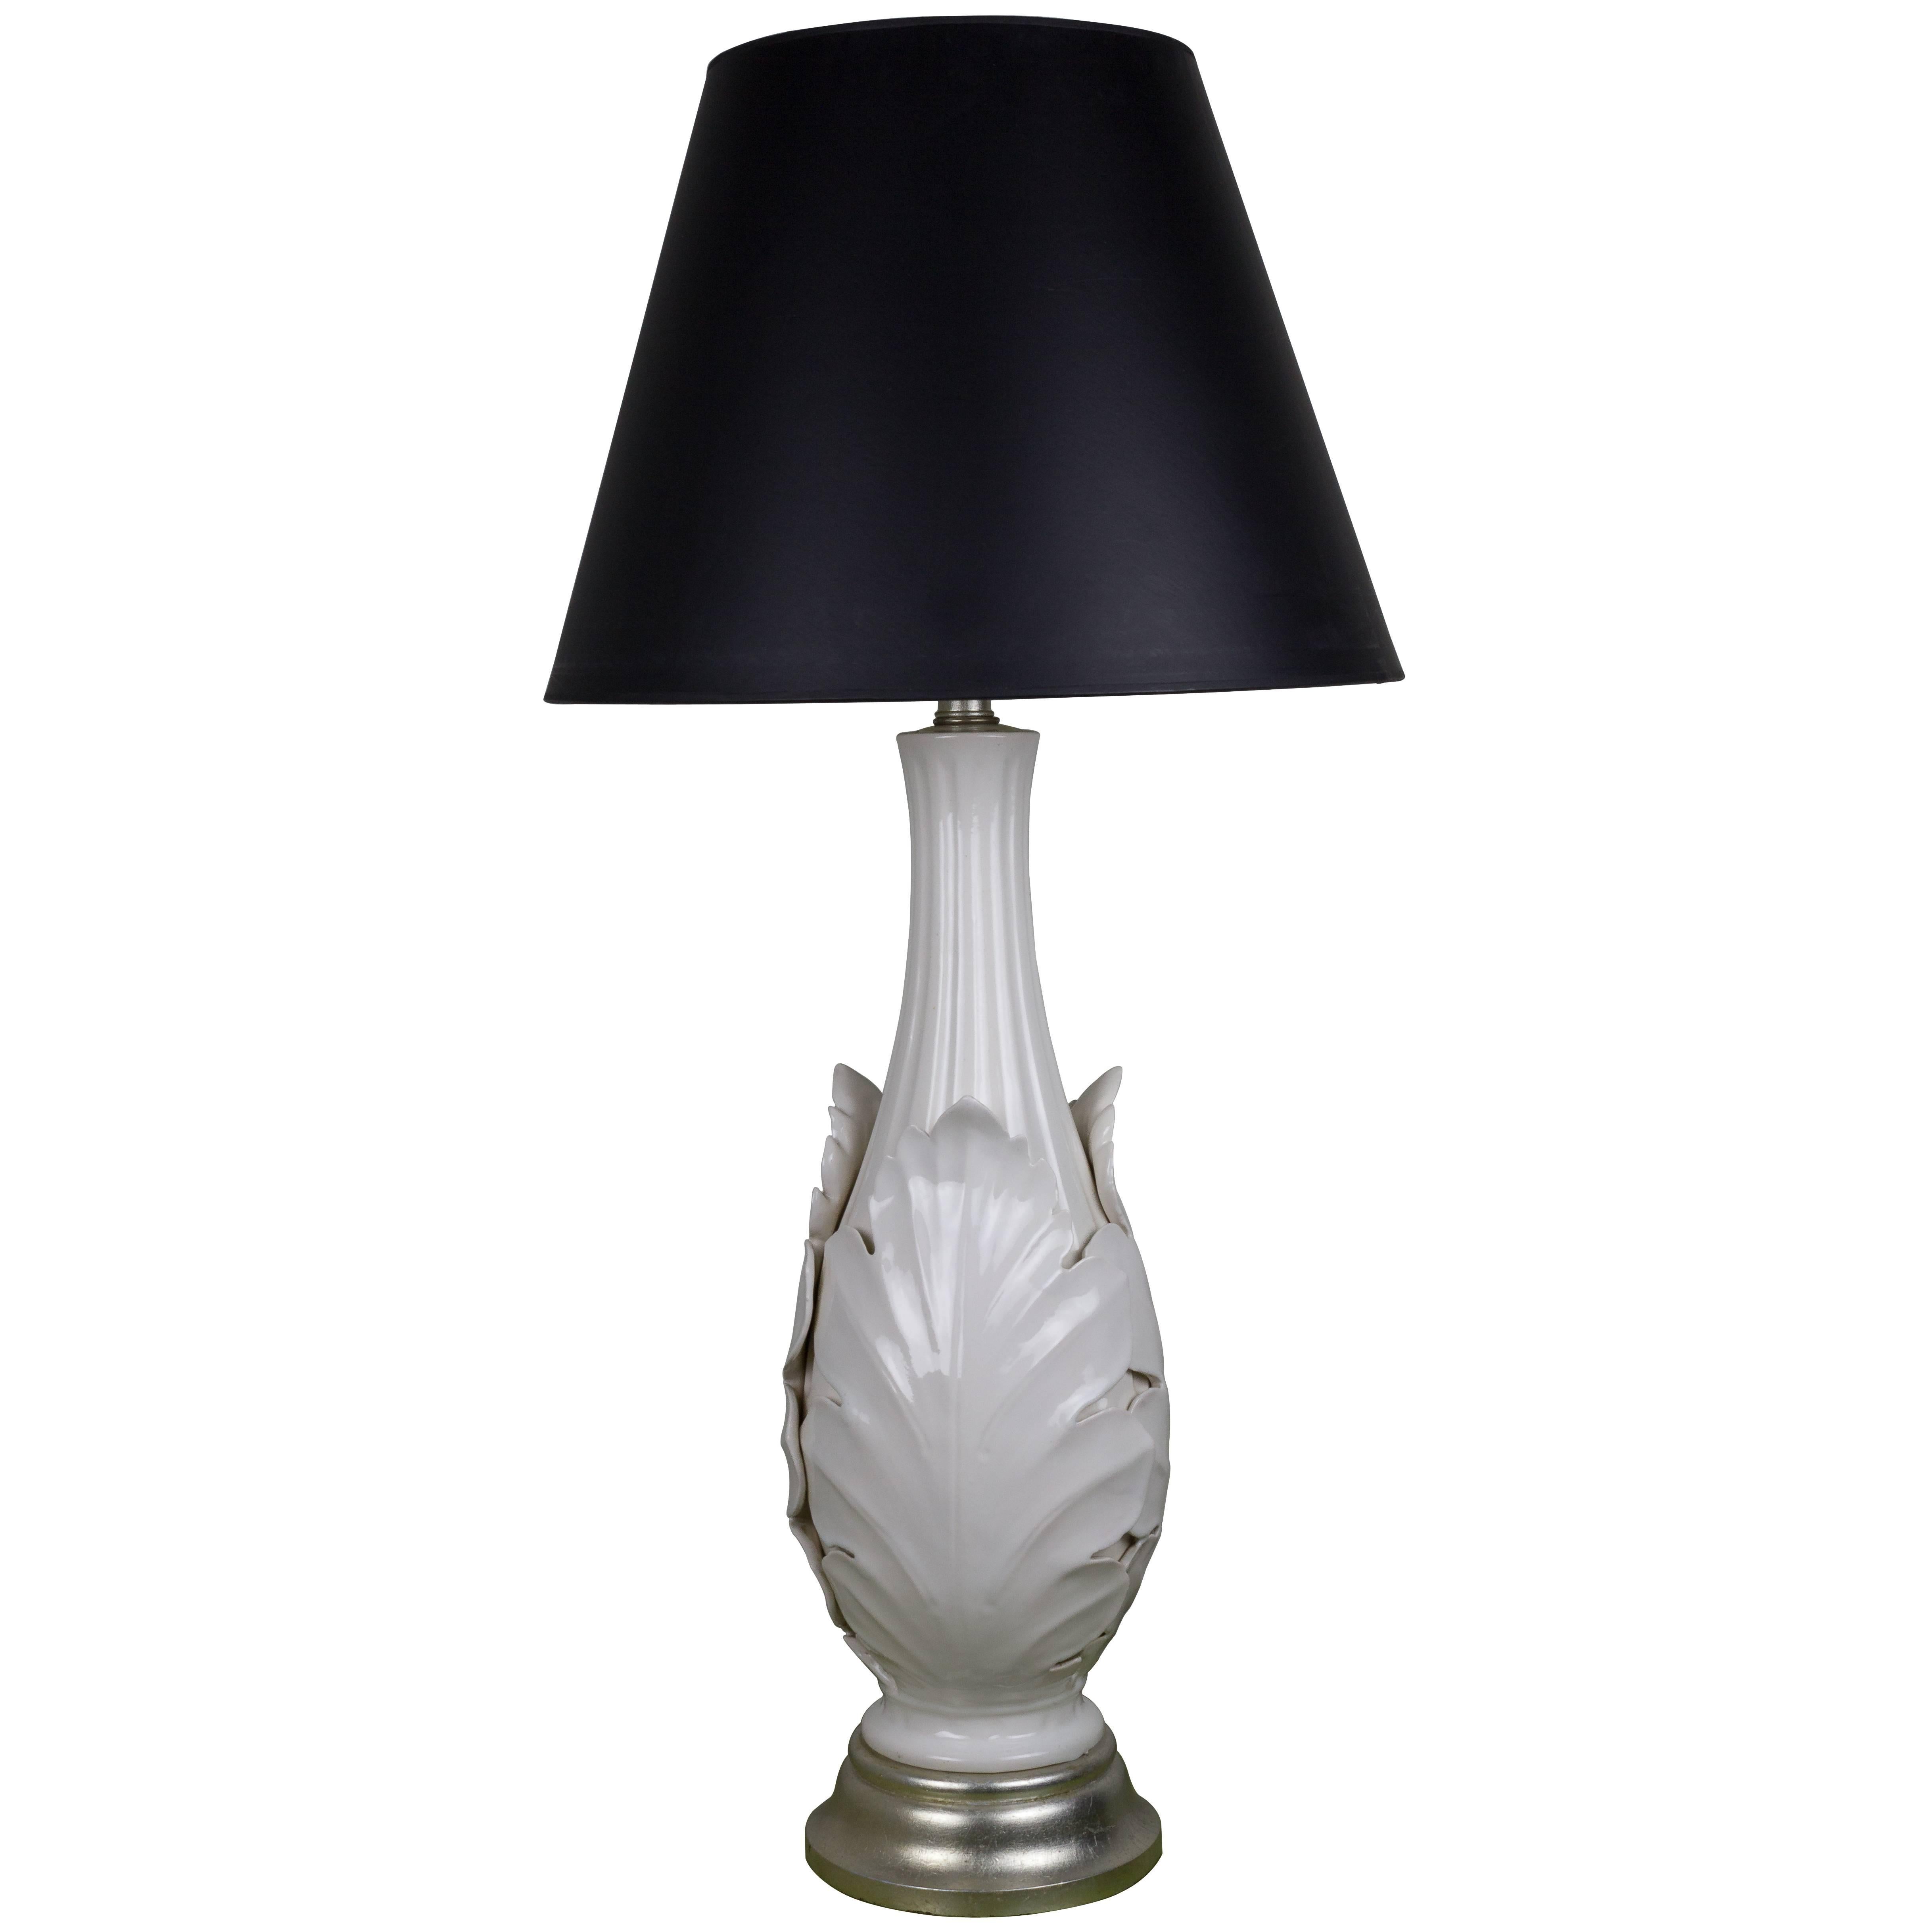 Elegant American 1940s White Ceramic Lamp